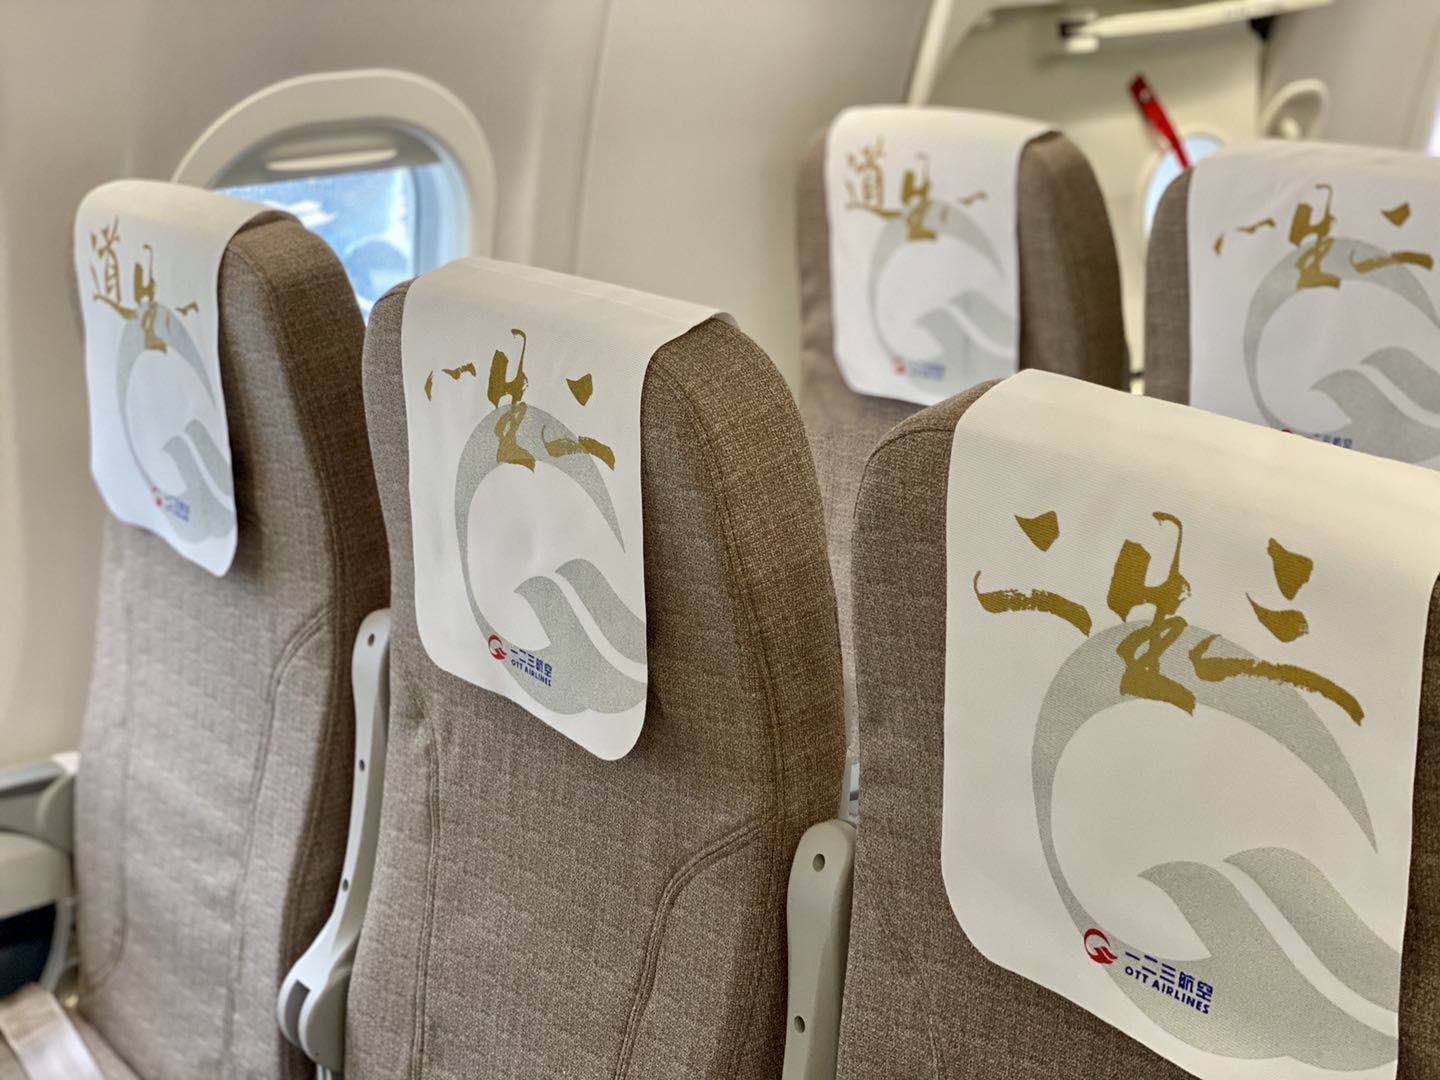 客机的全球首家用户;2019年8月30日,东航与中国商飞签订《arj21-700